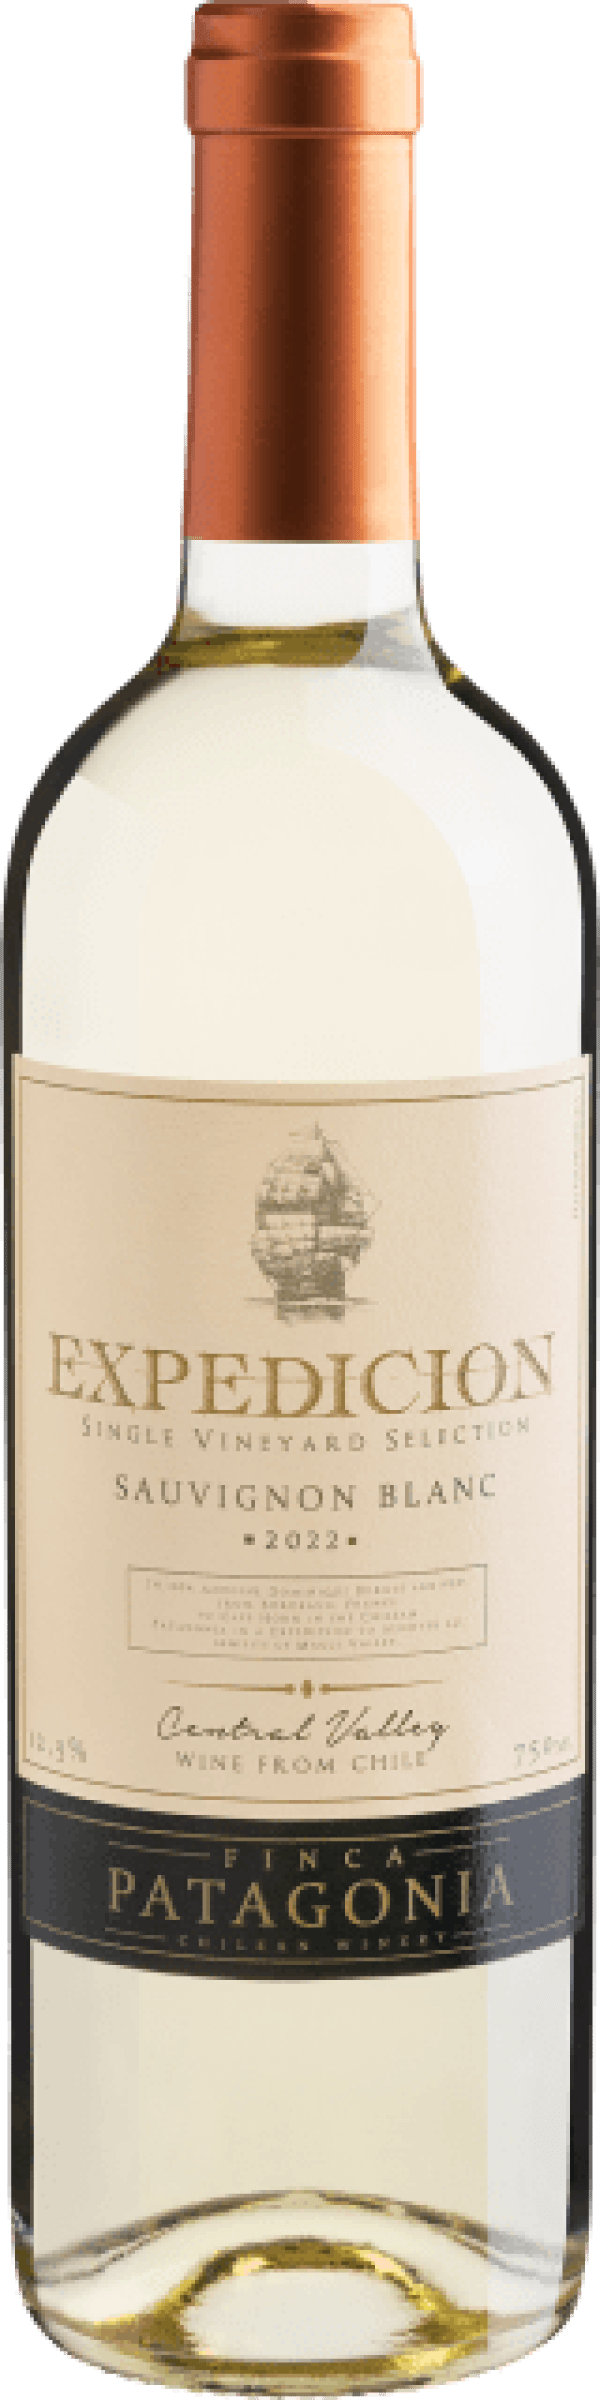 Finca Patagonia Expedicion Single Vineyard Selection Sauvignon Blanc Central Valley D.O. 2022